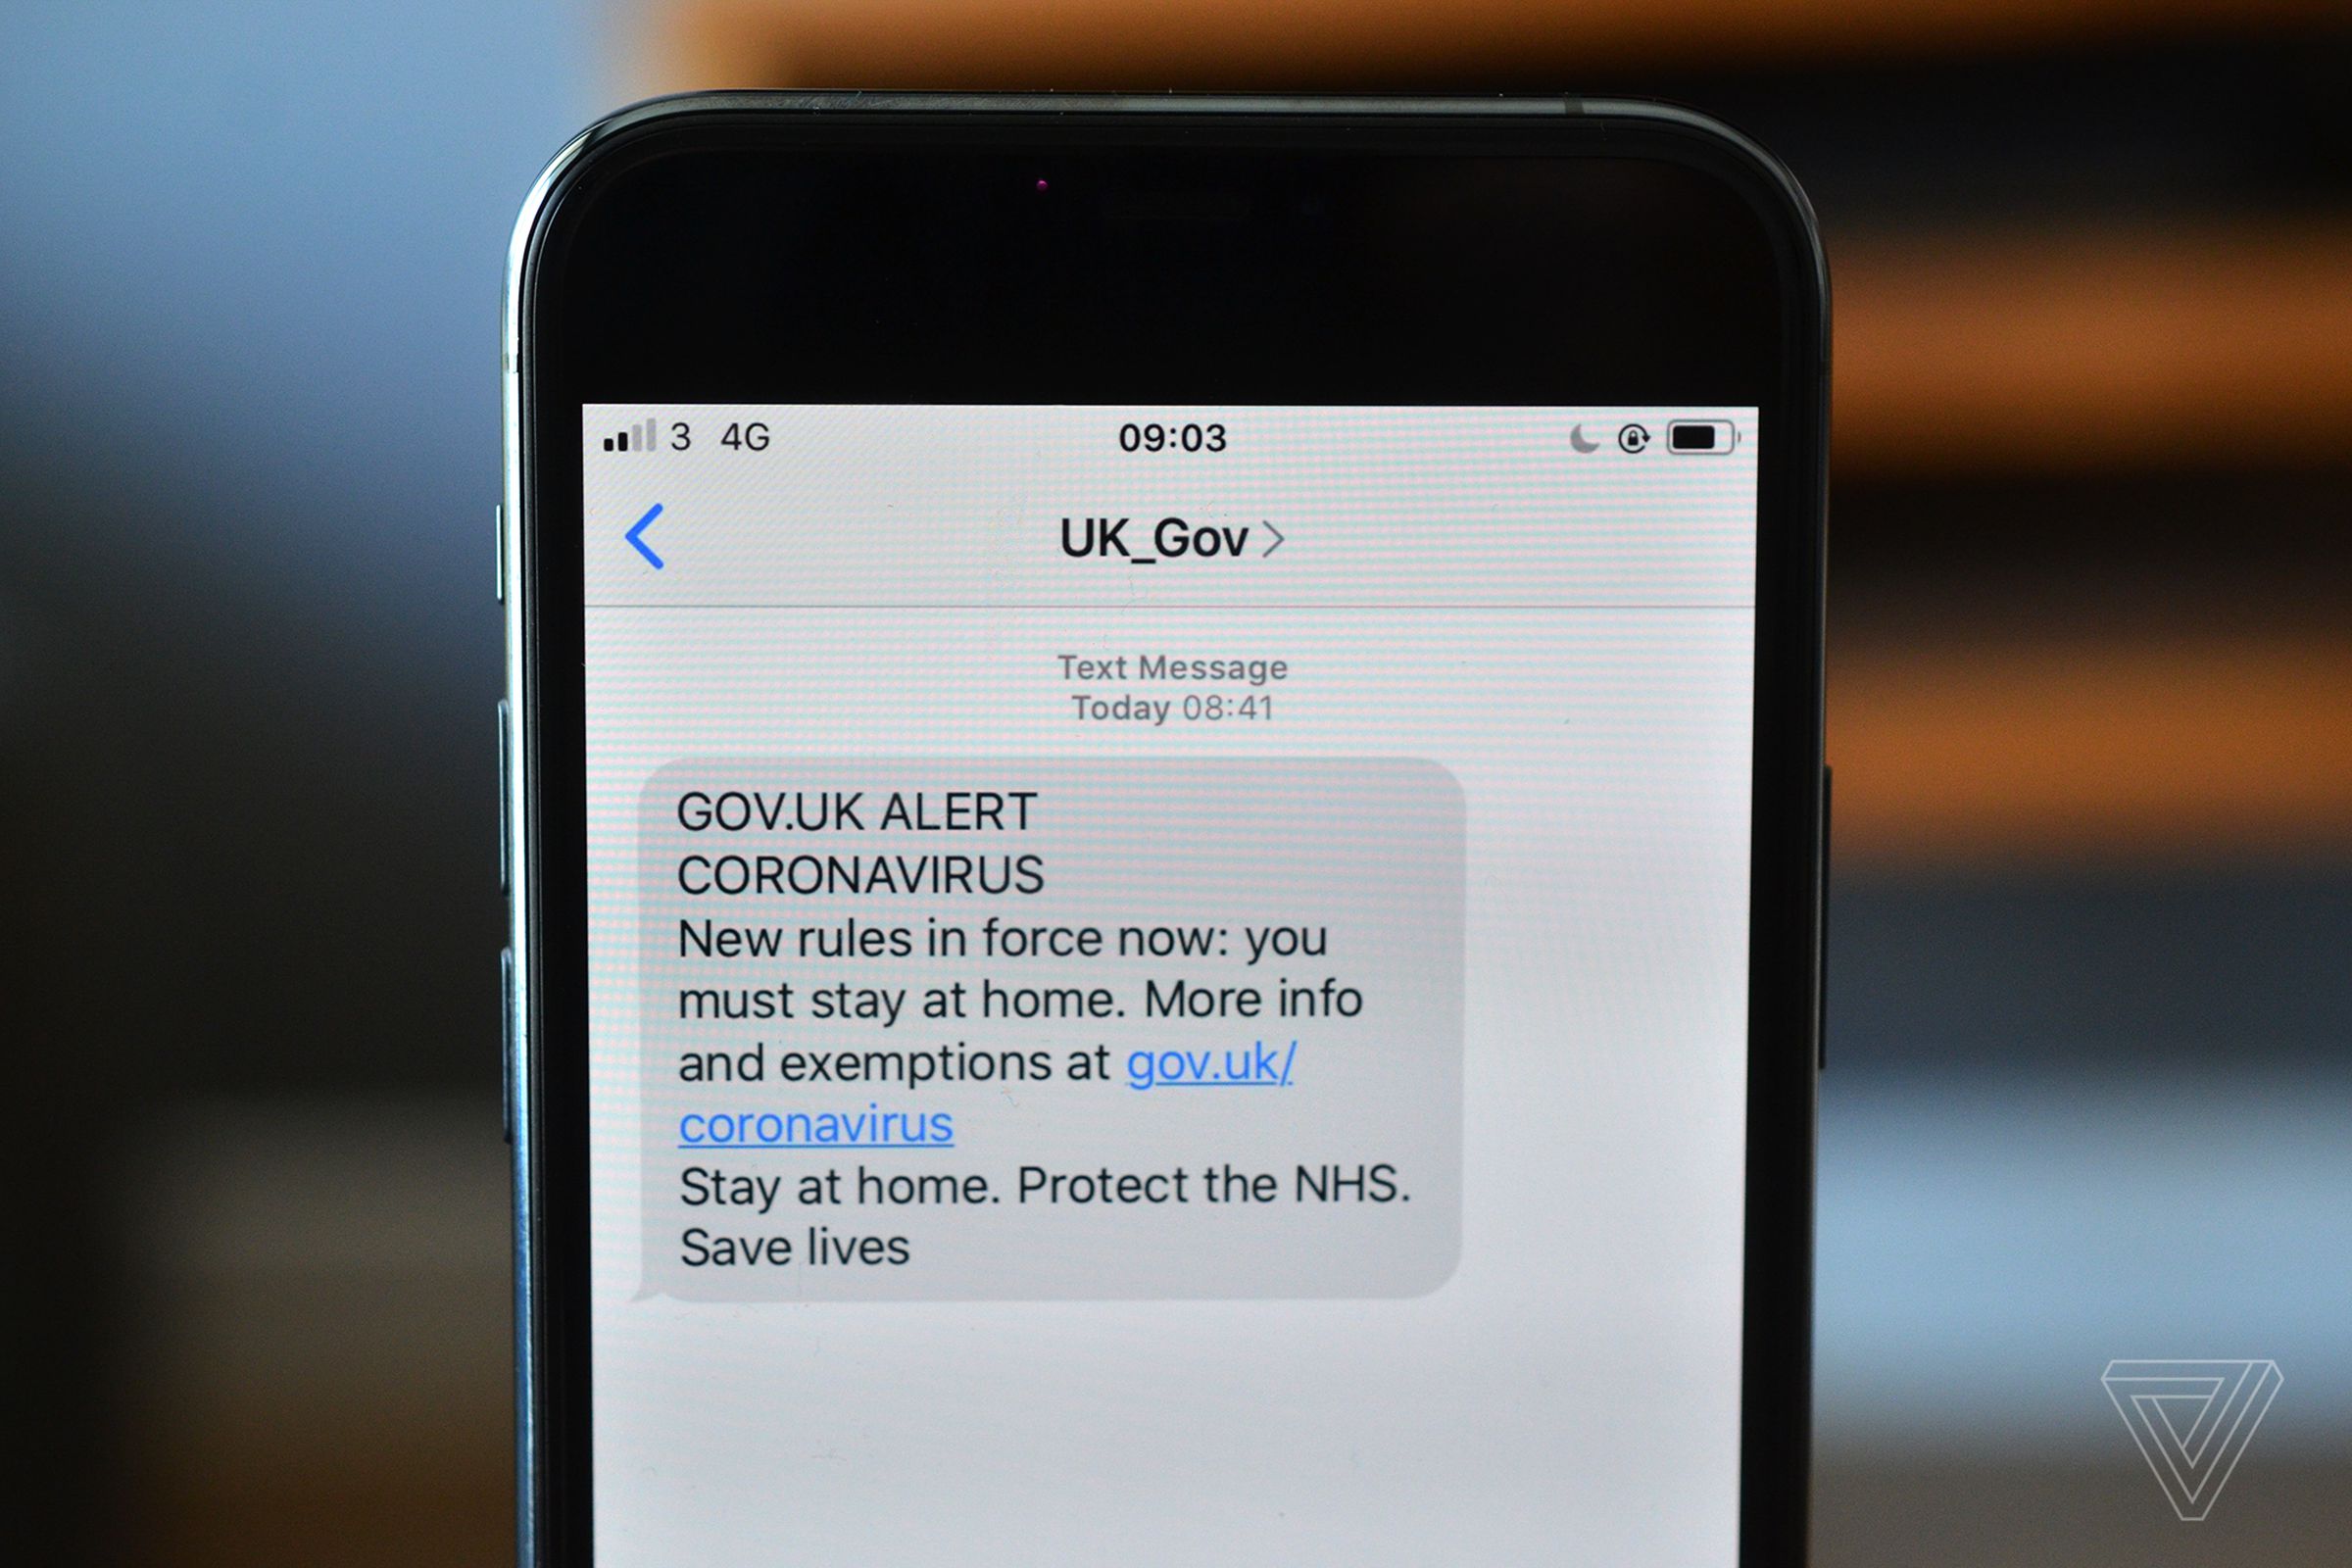 UK sms alert for coronavirus pandemic